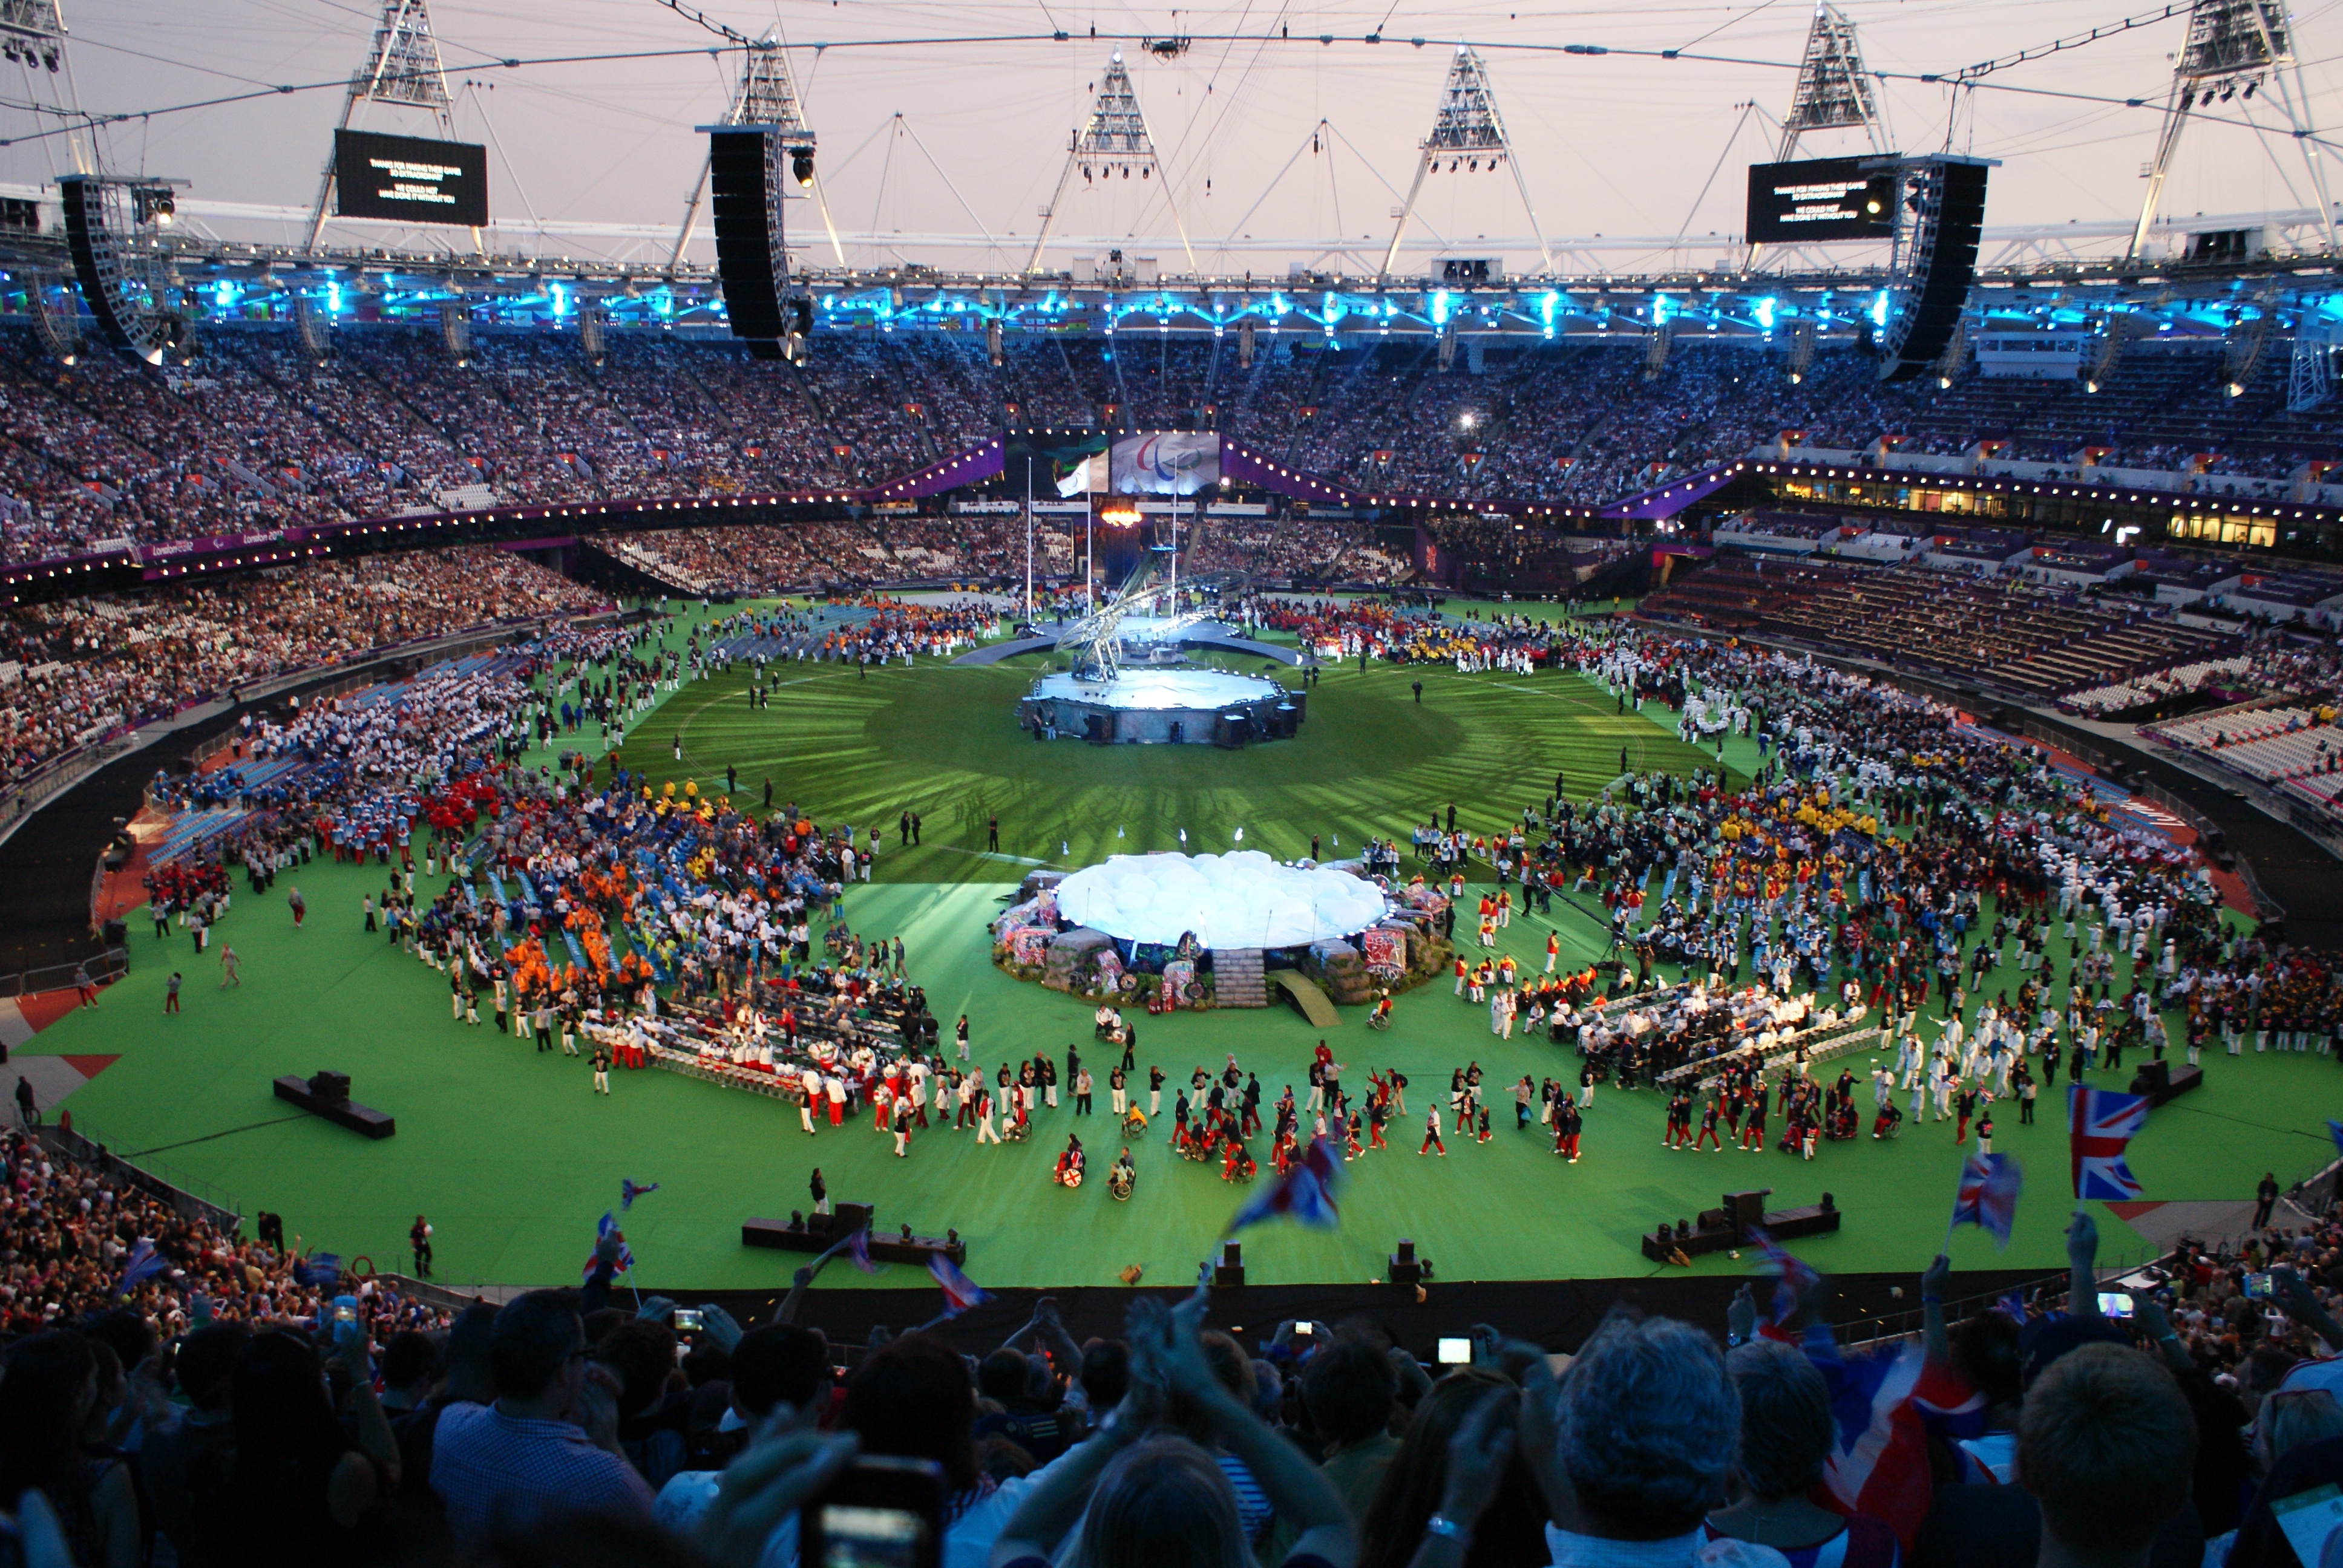 2012 Summer Paralympics Closing Ceremony Wikipedia